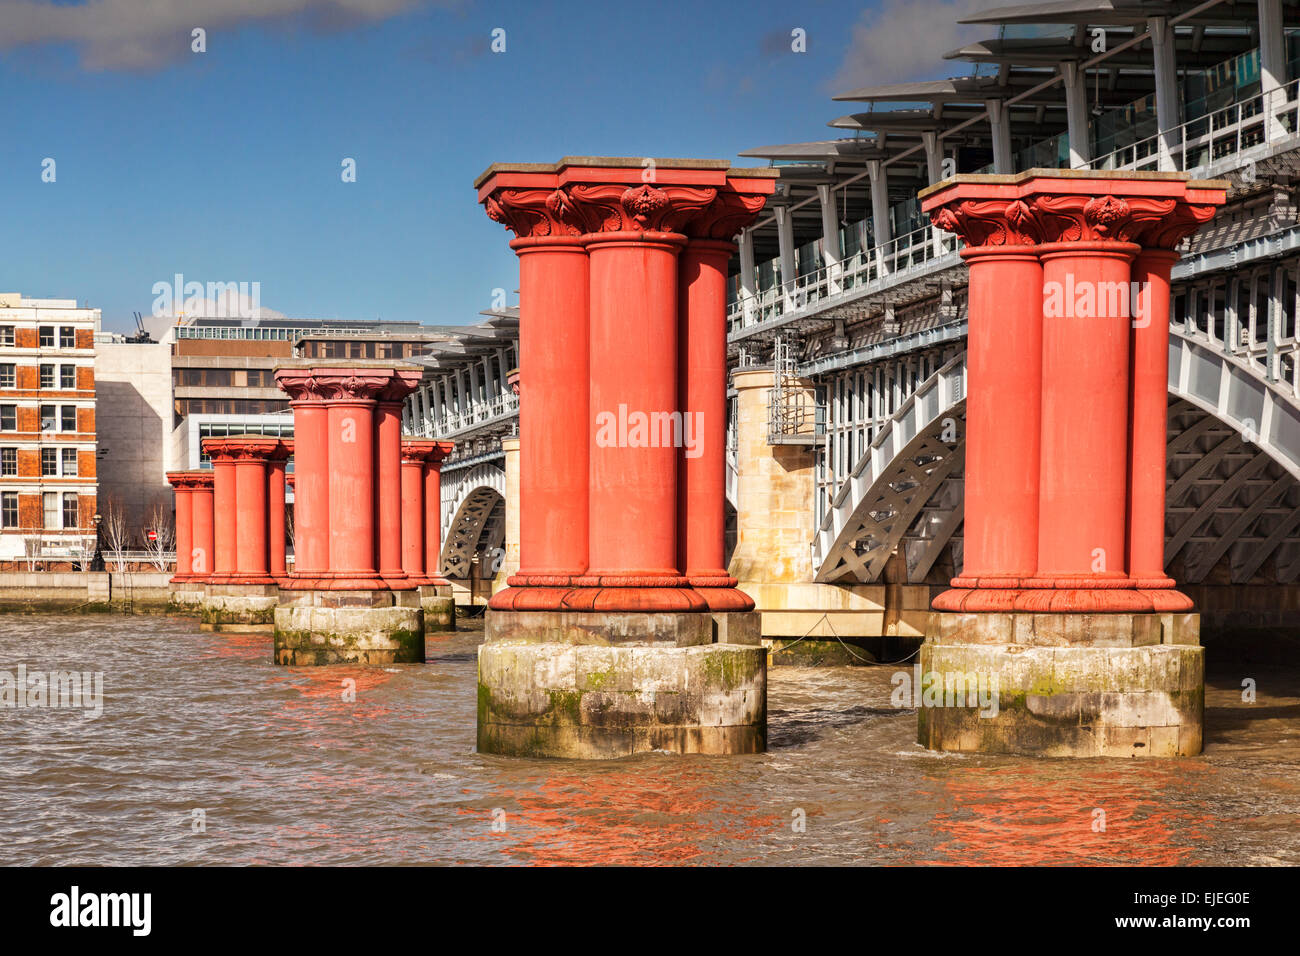 Blackfriars pont de chemin de fer, et les piliers d'un pont plus ancien qui a été retiré, Londres, Angleterre. Banque D'Images